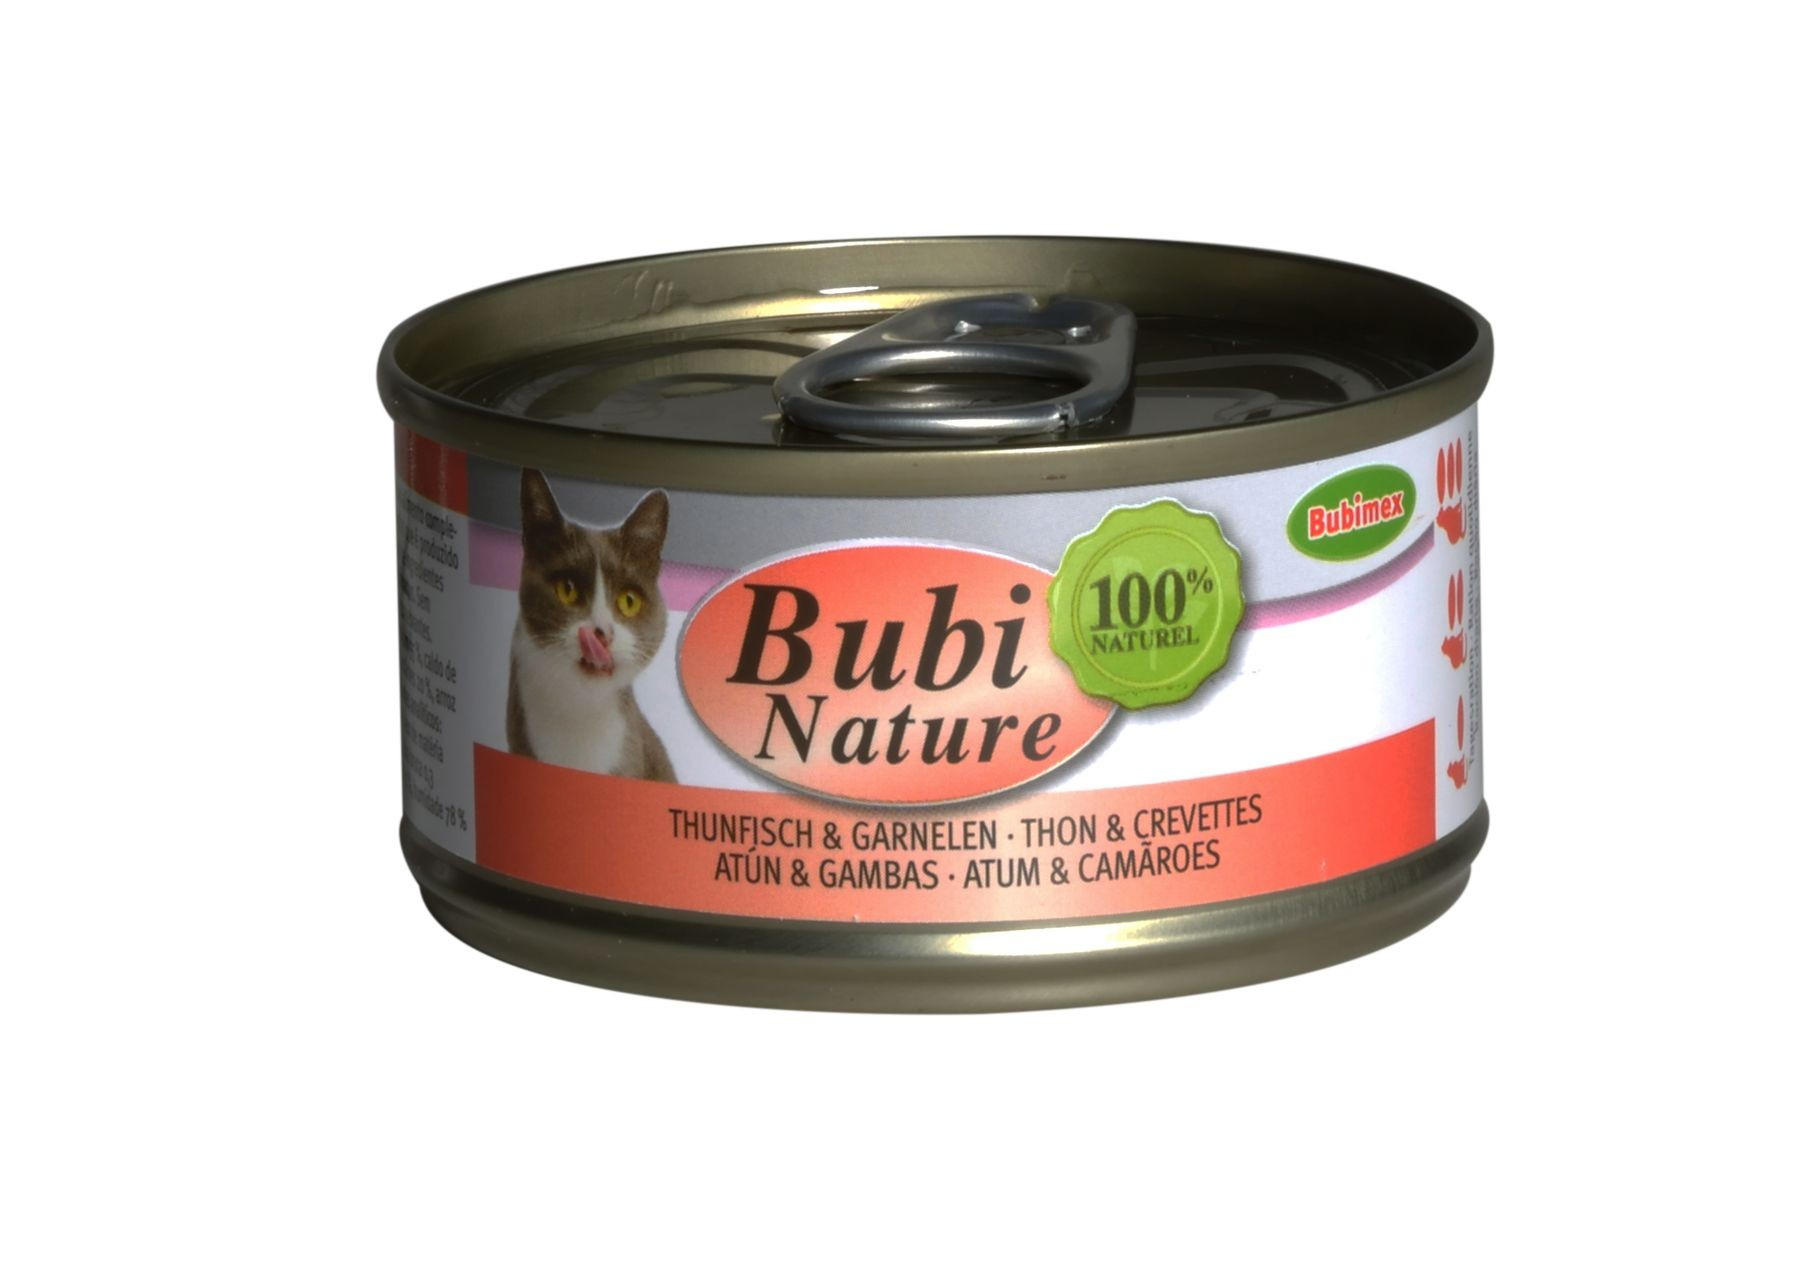 BUBIMEX Bubi Nature Nassfutter mit Thunfisch & Garnelen für Katzen